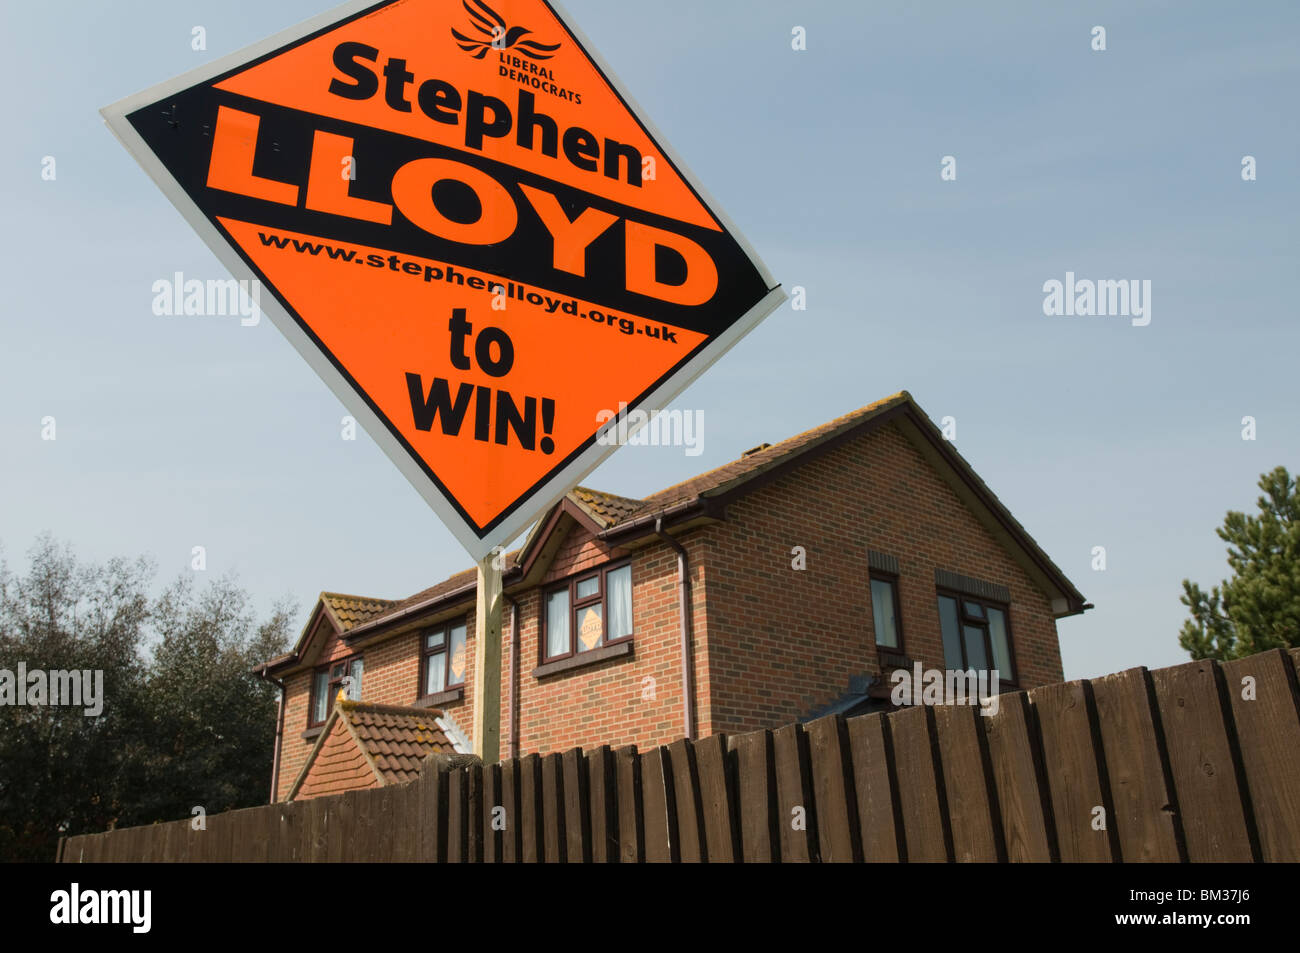 Regno Unito, Inghilterra, 18 Aprile 2010 - nella corsa al 2010 elezione generale un gran candidato la scheda viene presentato. Foto Stock